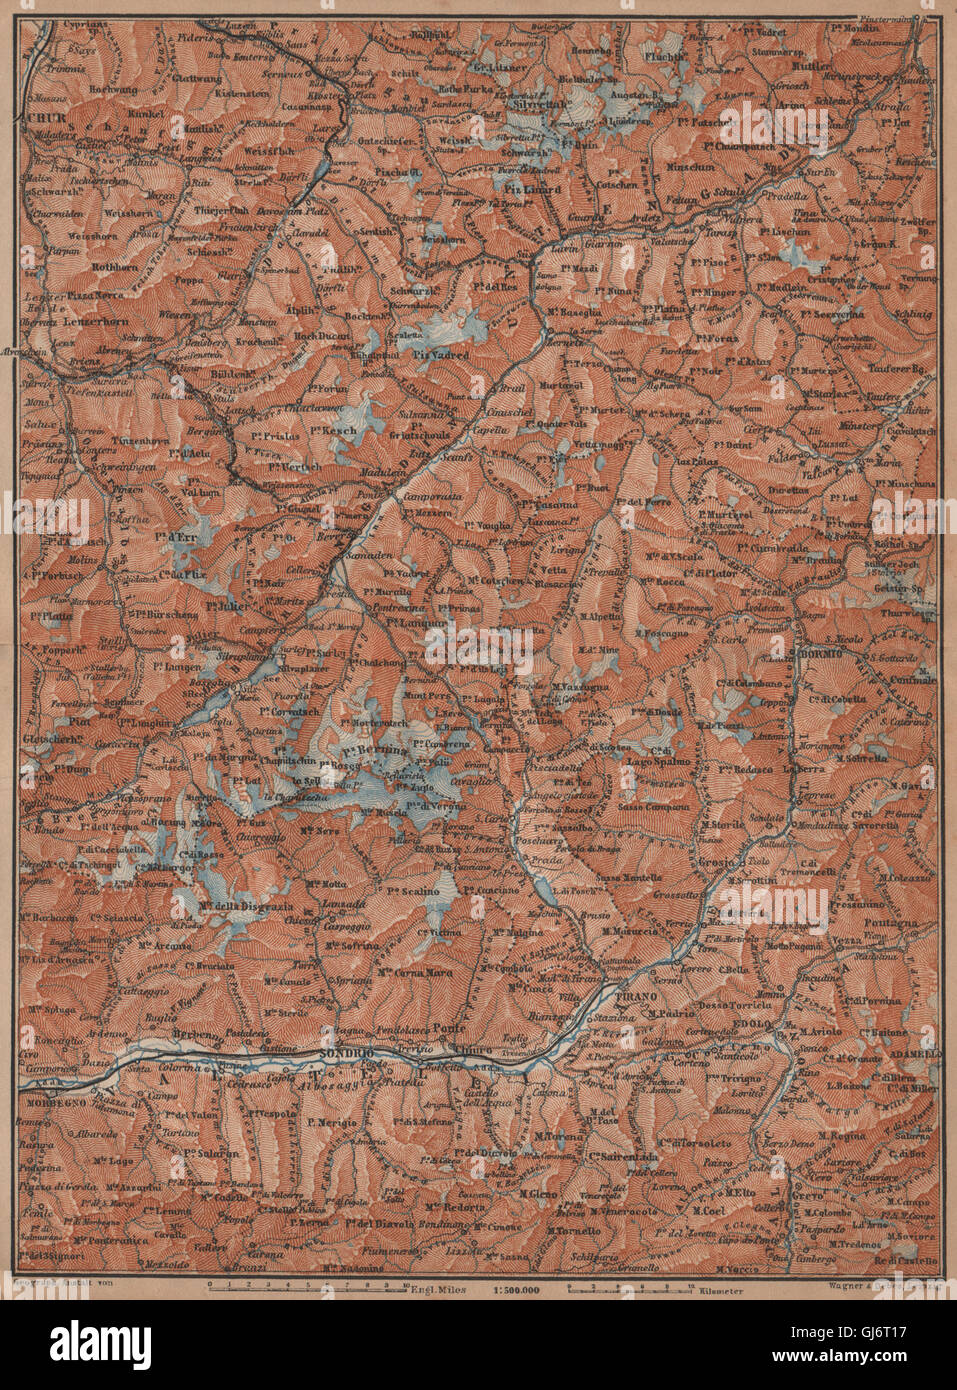 ENGADINE/VAL TELLINA. Davos Arosa Sils Bormio Livigno Sondrio Chur, 1901 map Stock Photo